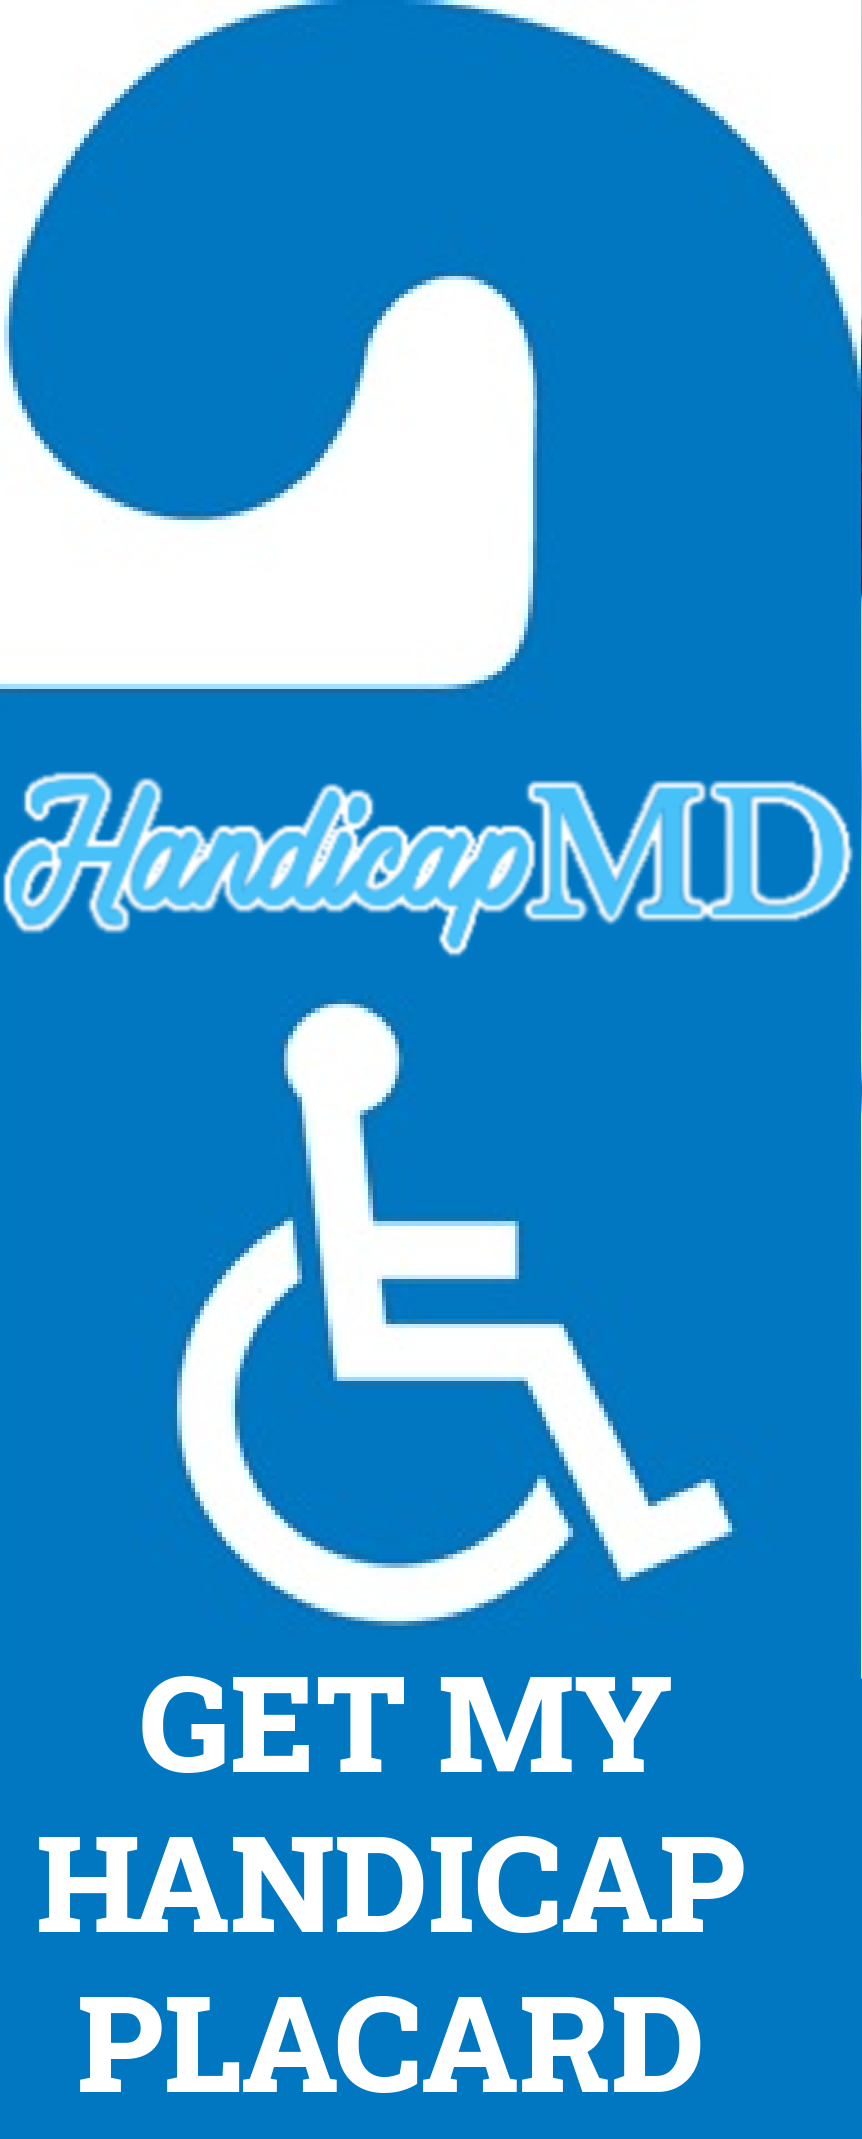 South Carolina Handicap Parking Placards